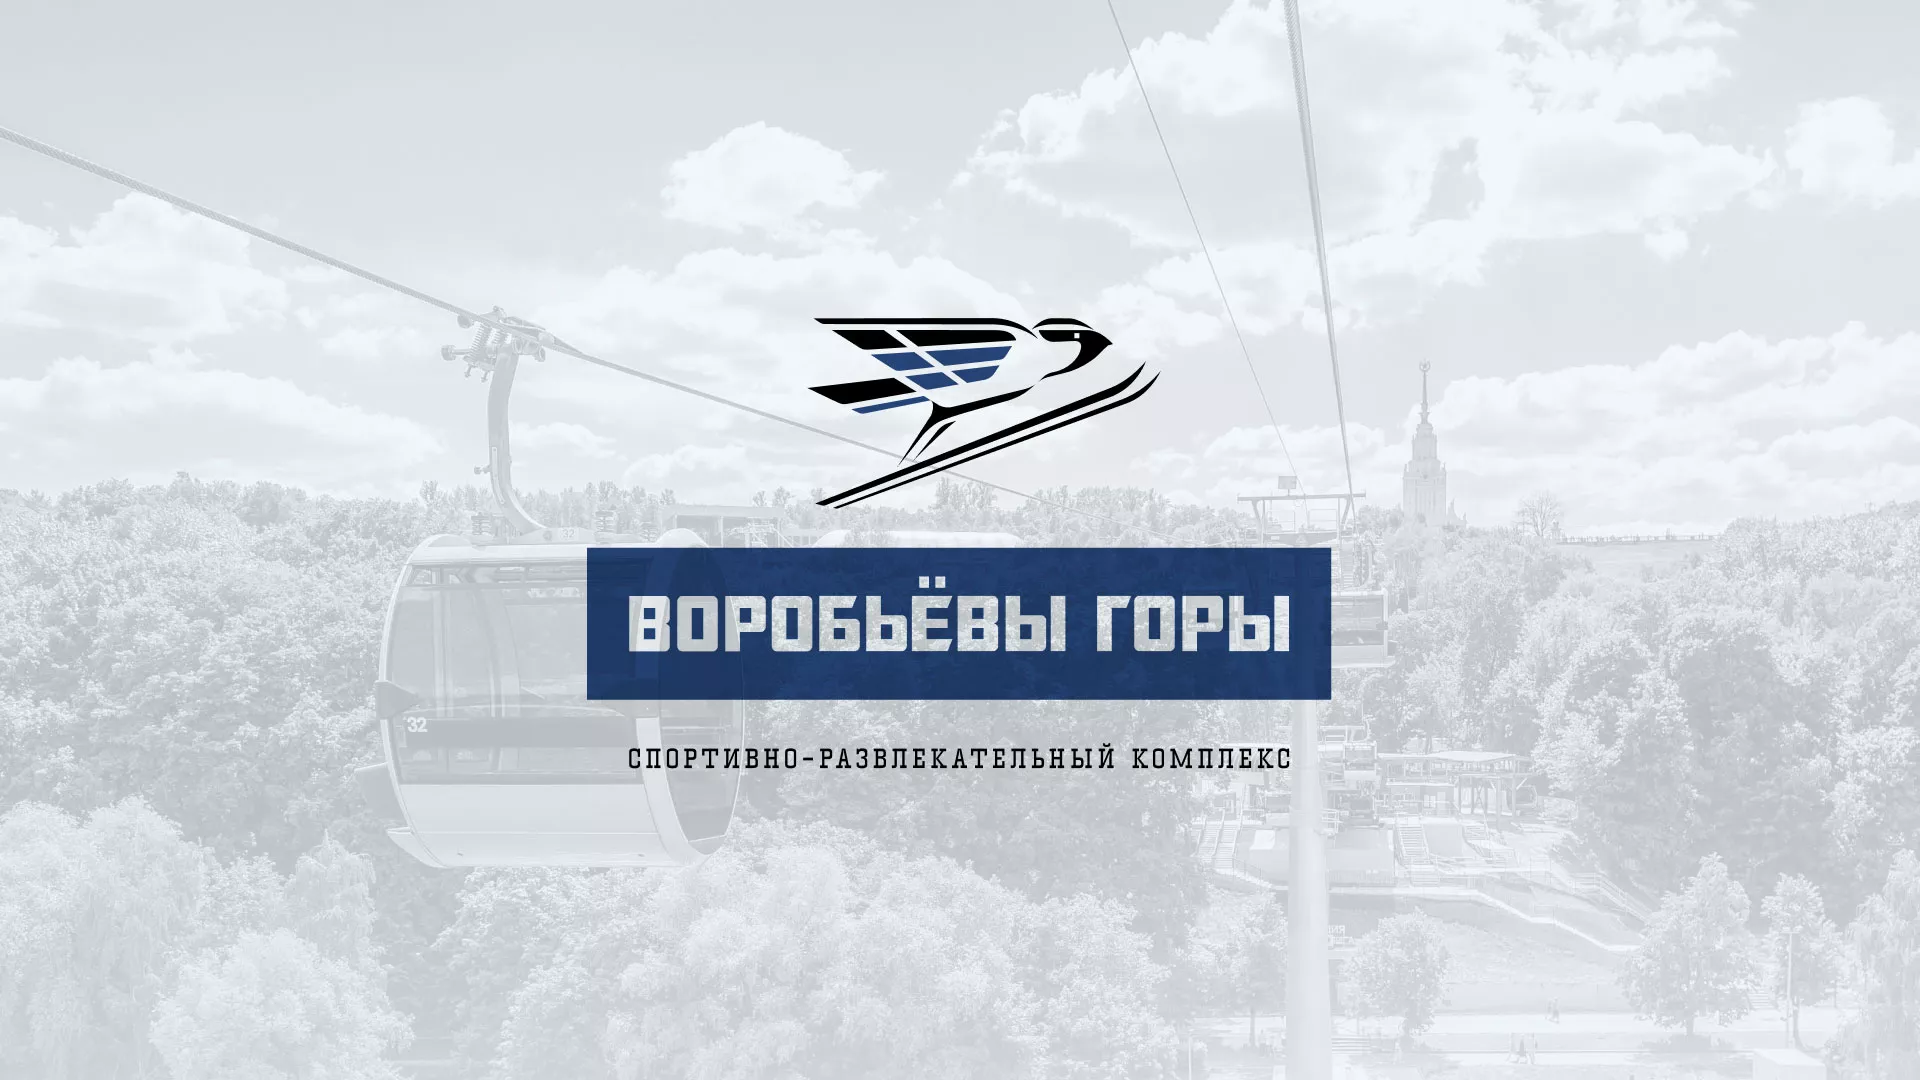 Разработка сайта в Горно-Алтайске для спортивно-развлекательного комплекса «Воробьёвы горы»